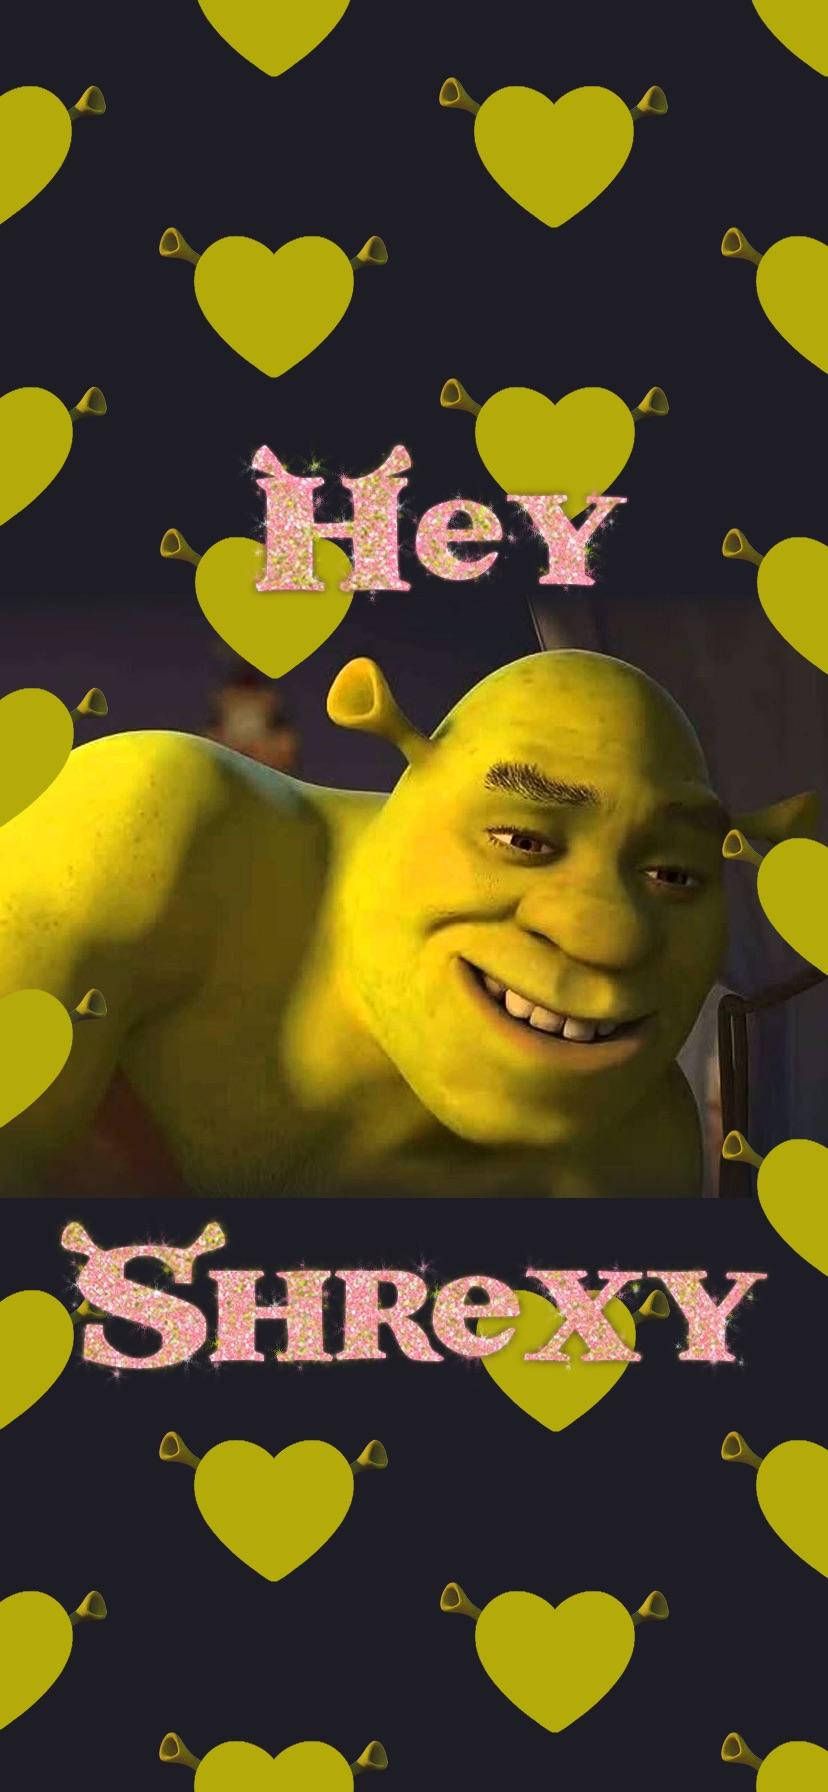 Hey Shrexy - Shrek